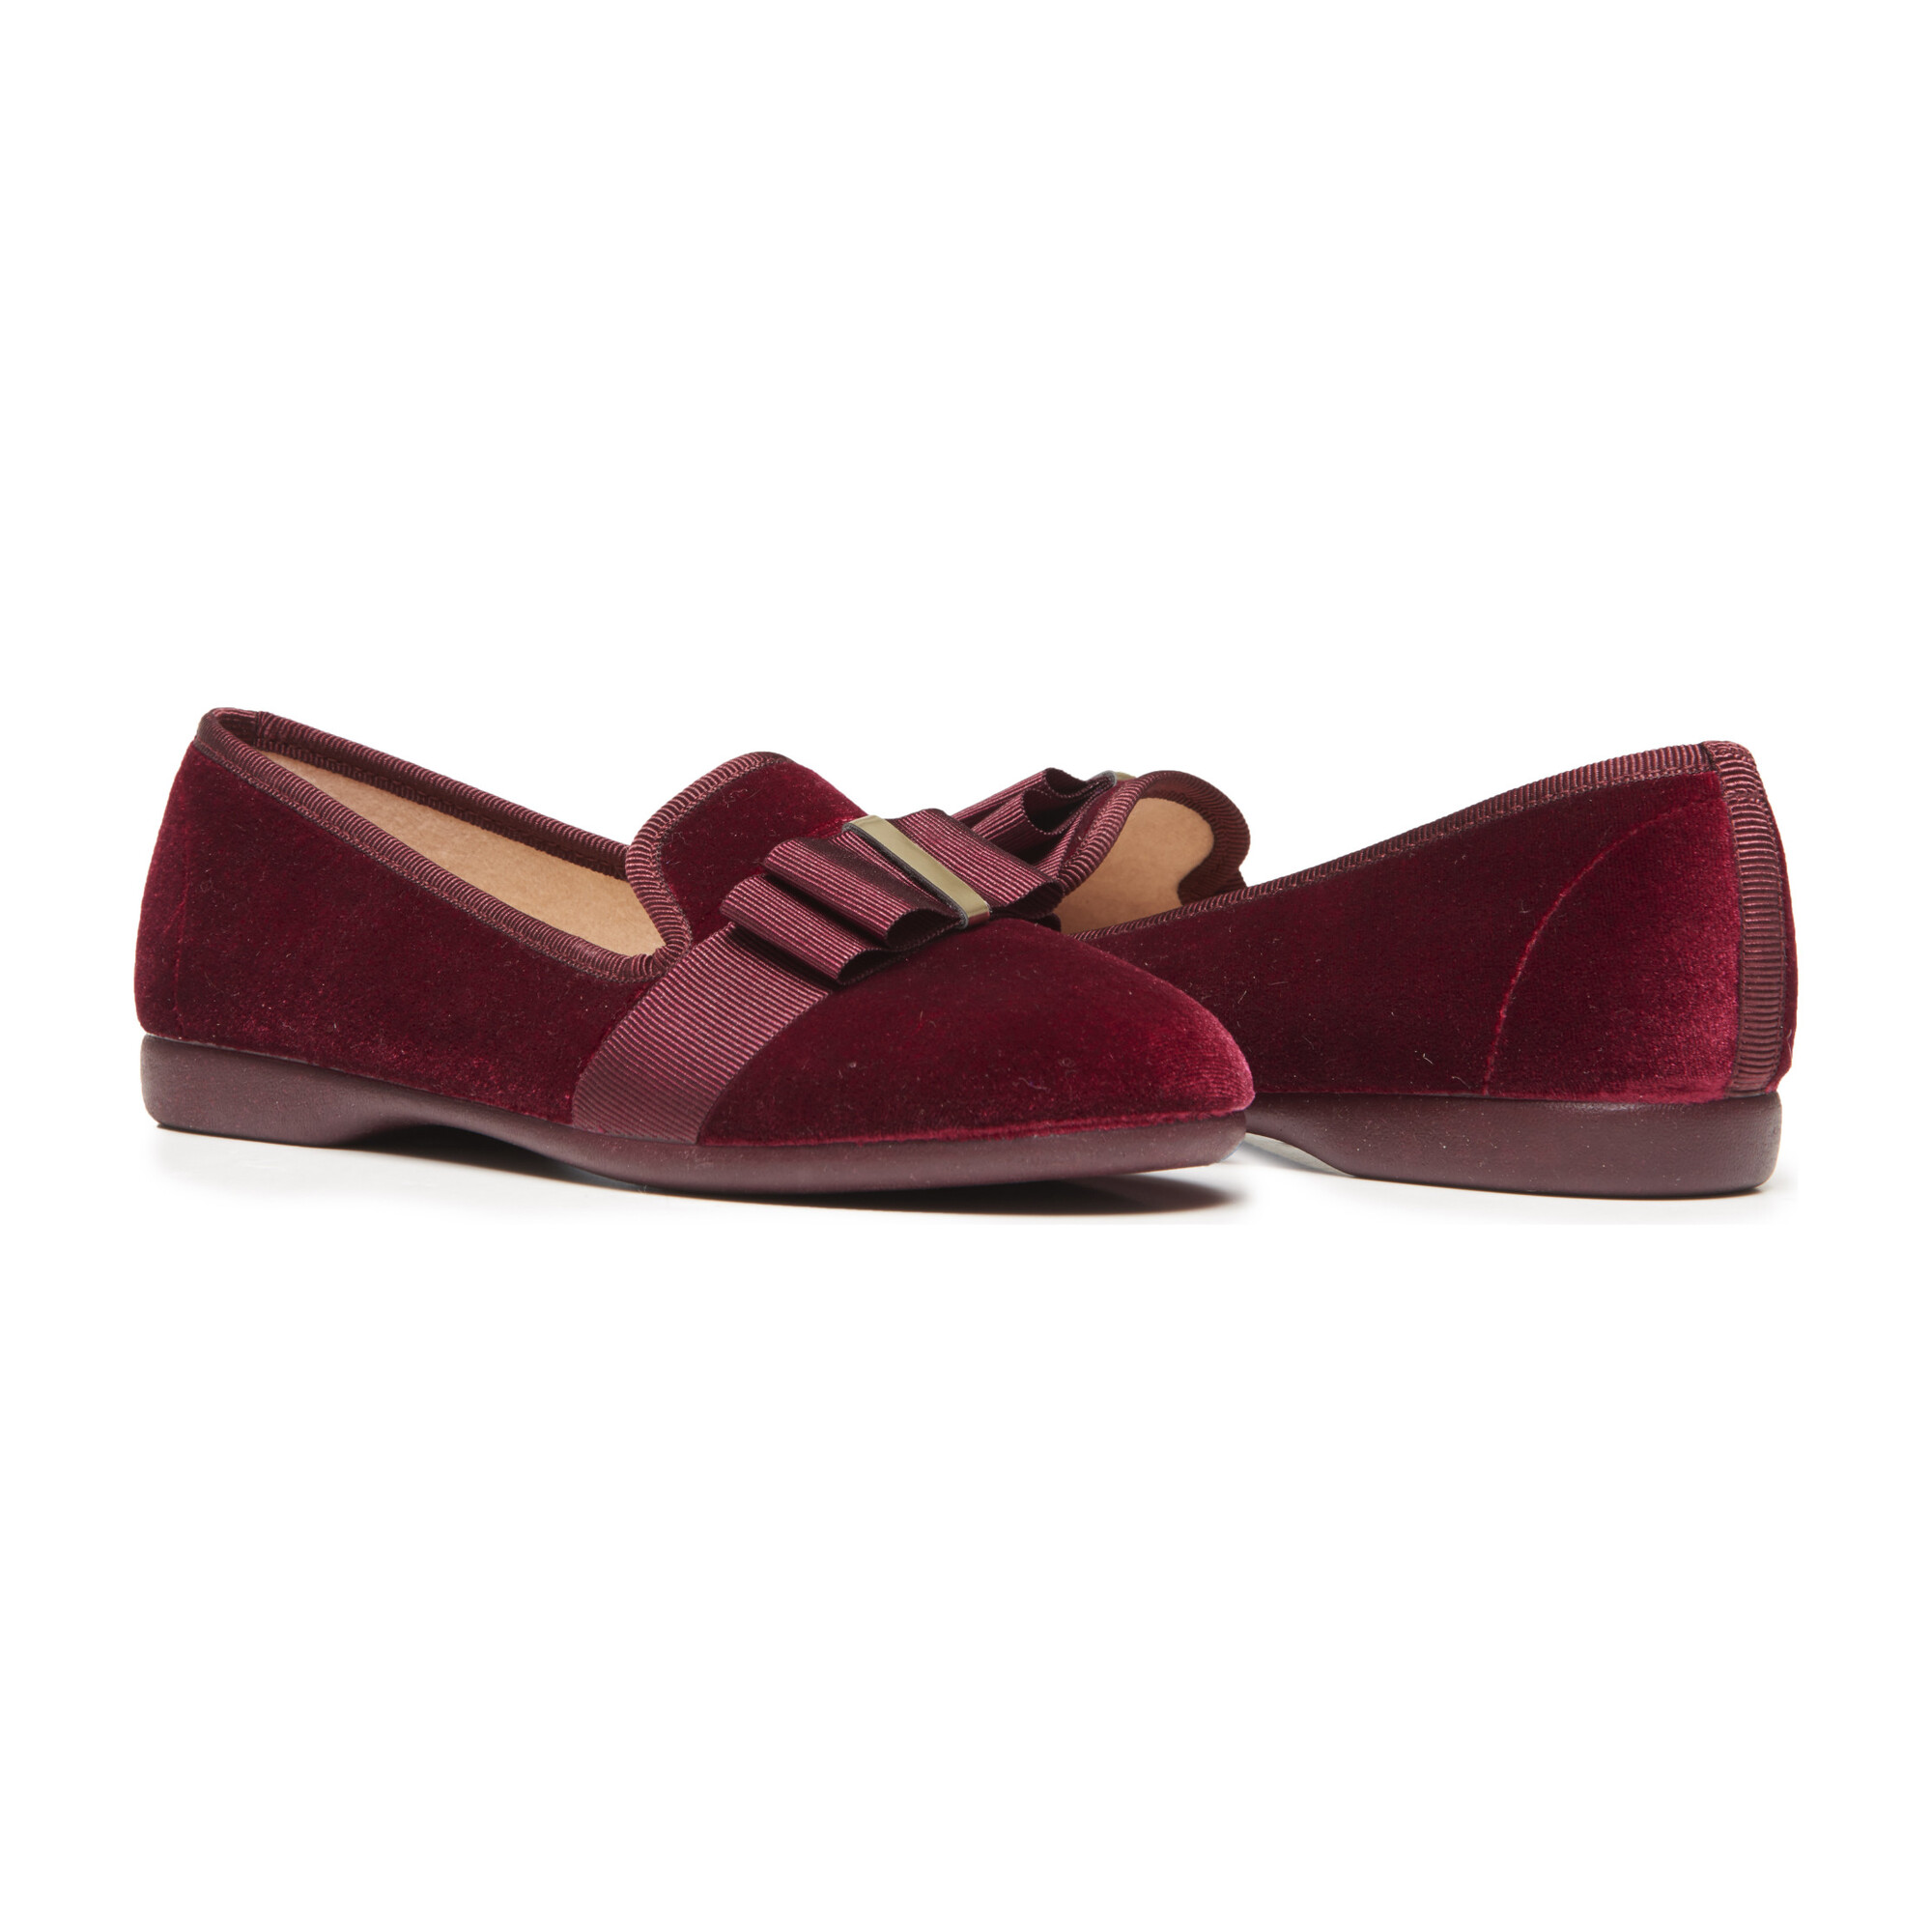 Grosgrain Bow Loafers, Burgundy Velvet - Kids Girl Accessories Shoes ...